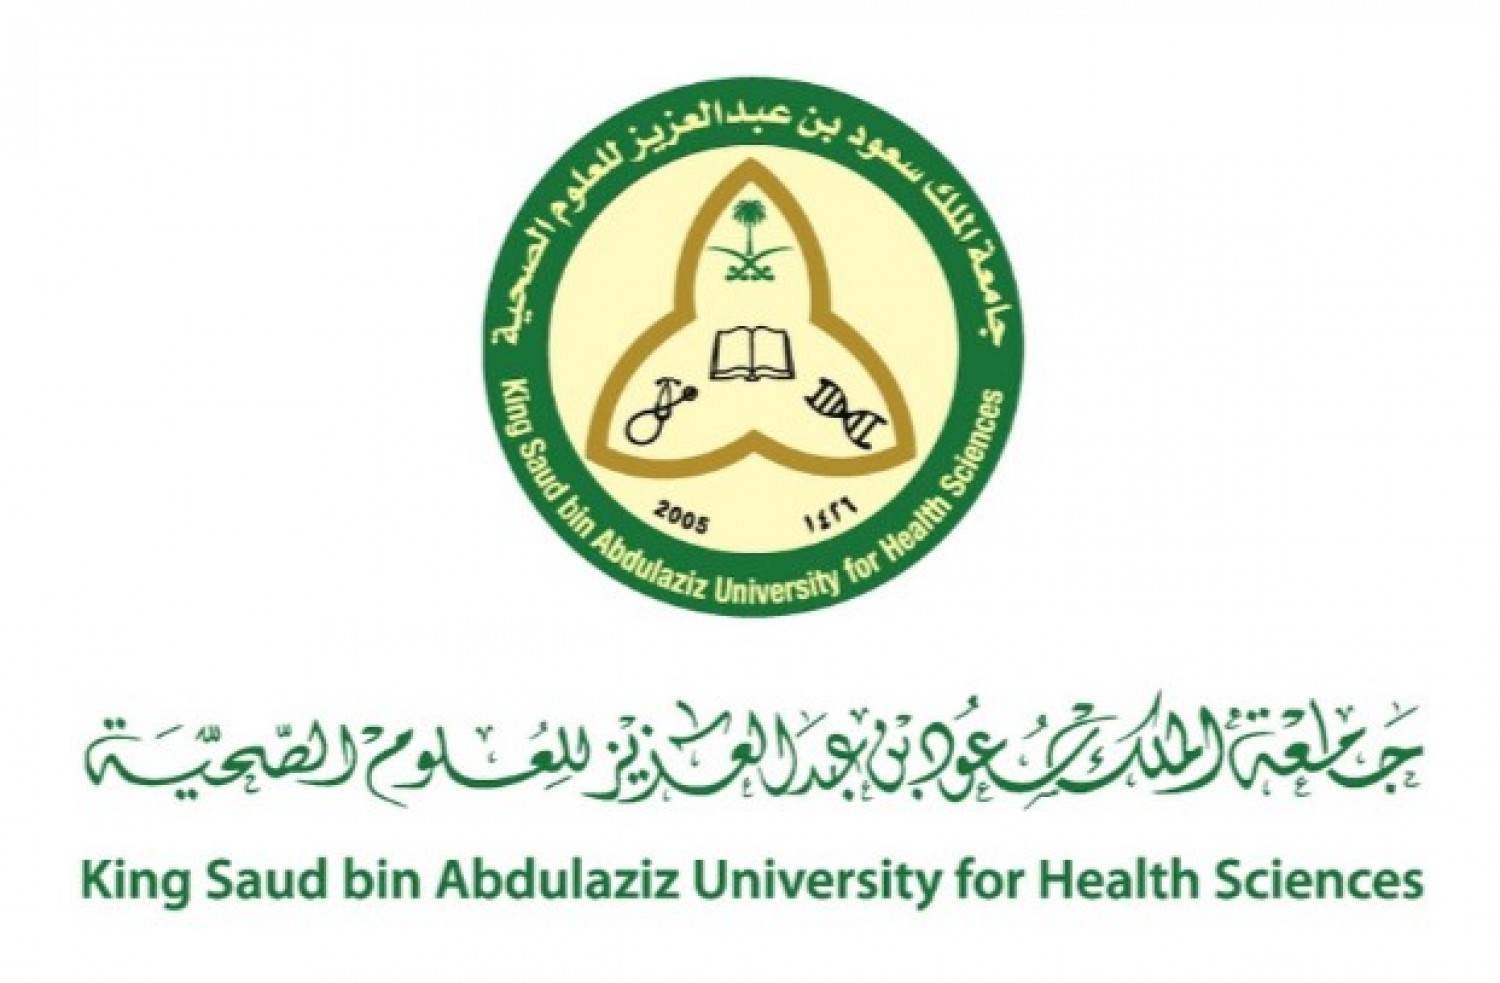 جامعة الملك سعود بن عبدالعزيز للعلوم الصحية تعلن عن توفر وظائف شاغرة